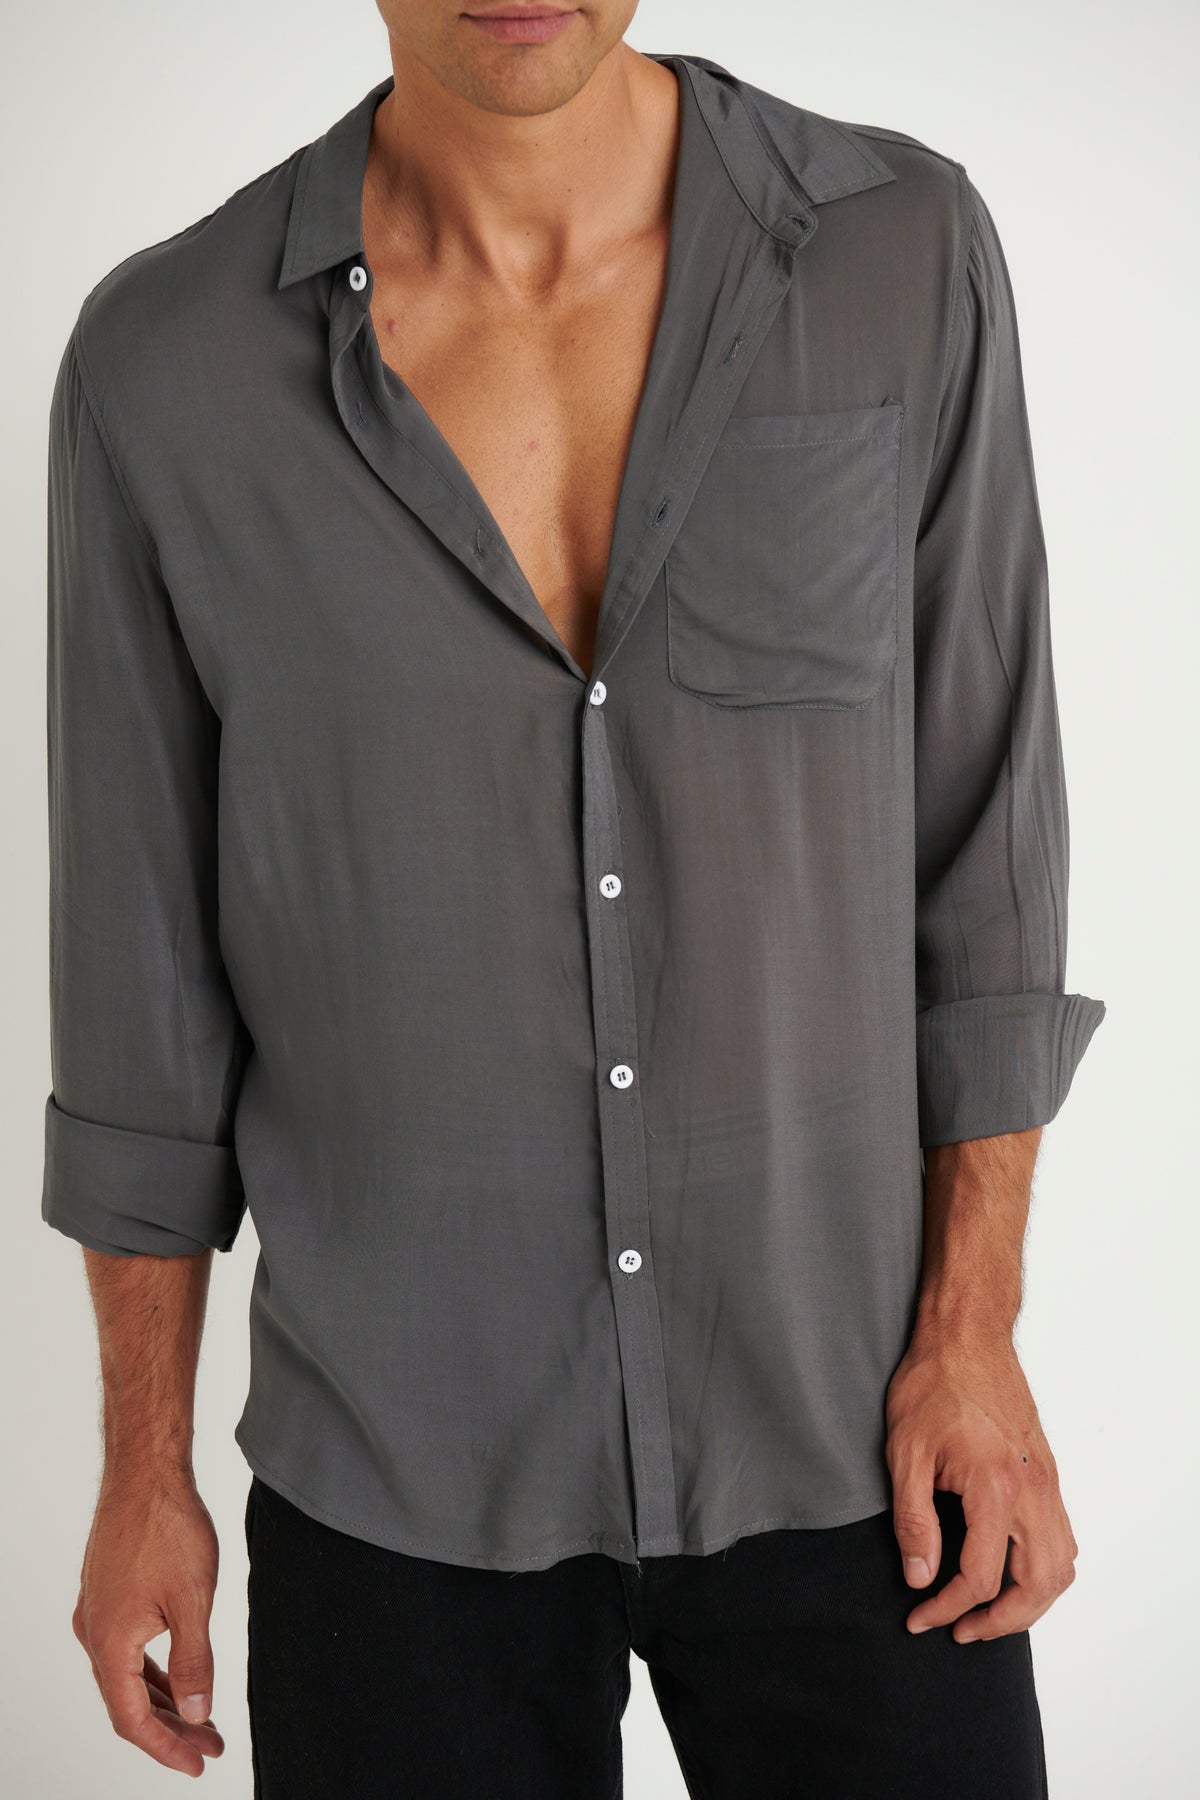 NTH Rayon Long Sleeve Shirt Slate - FINAL SALE